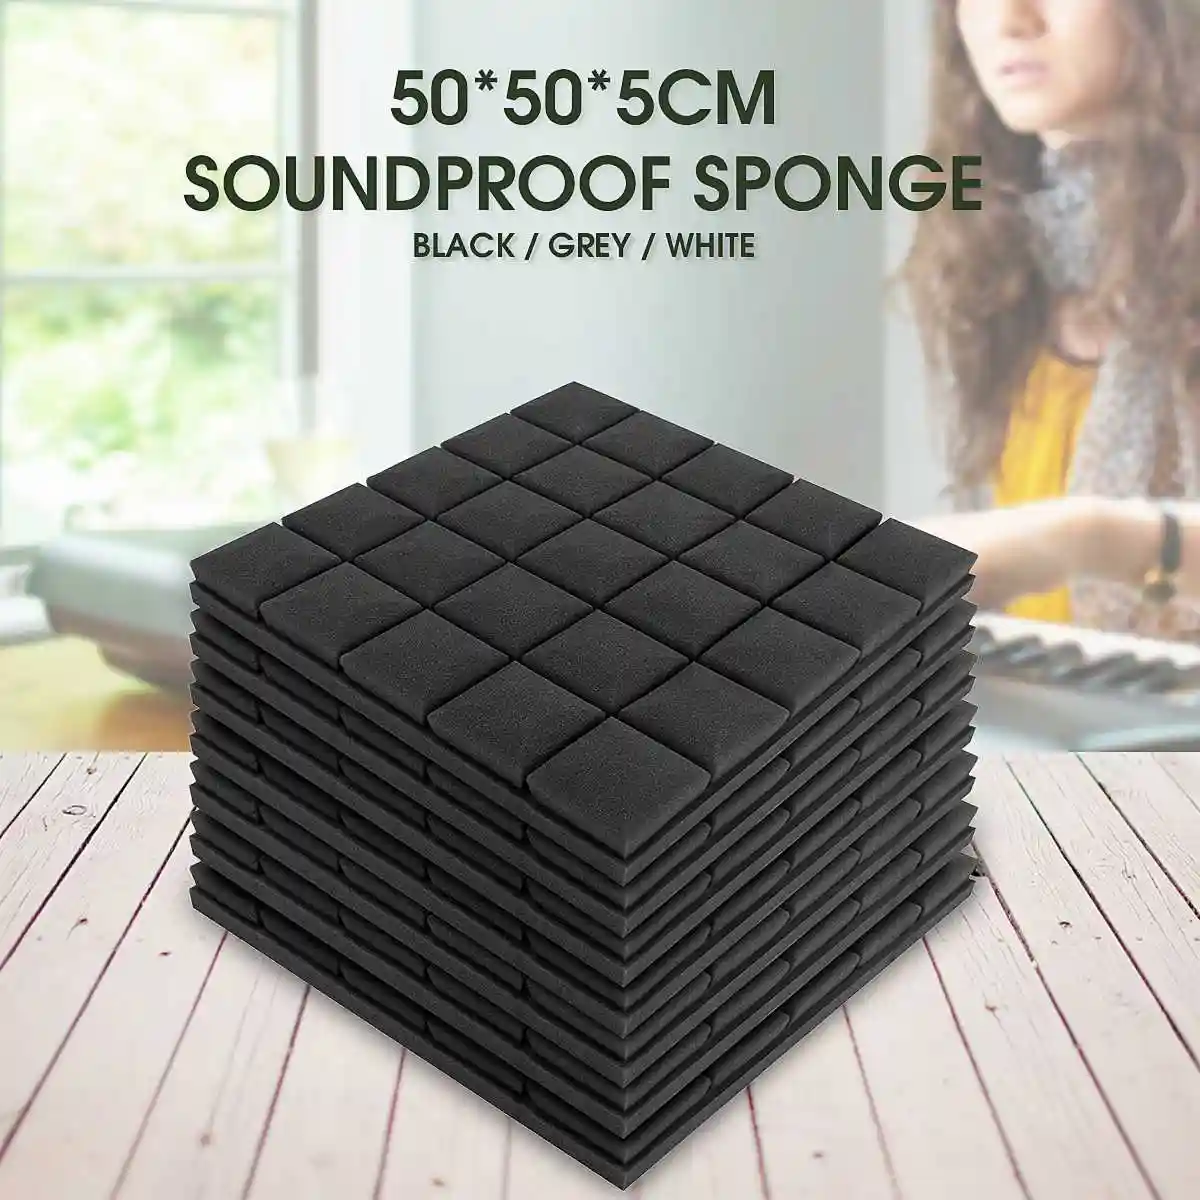 5 Pcs 500x500x50mm Soundproof Foam Acoustic Sound Stop Absorption Sponge Drum Room Accessories Wedge Tiles Polyurethane Foam